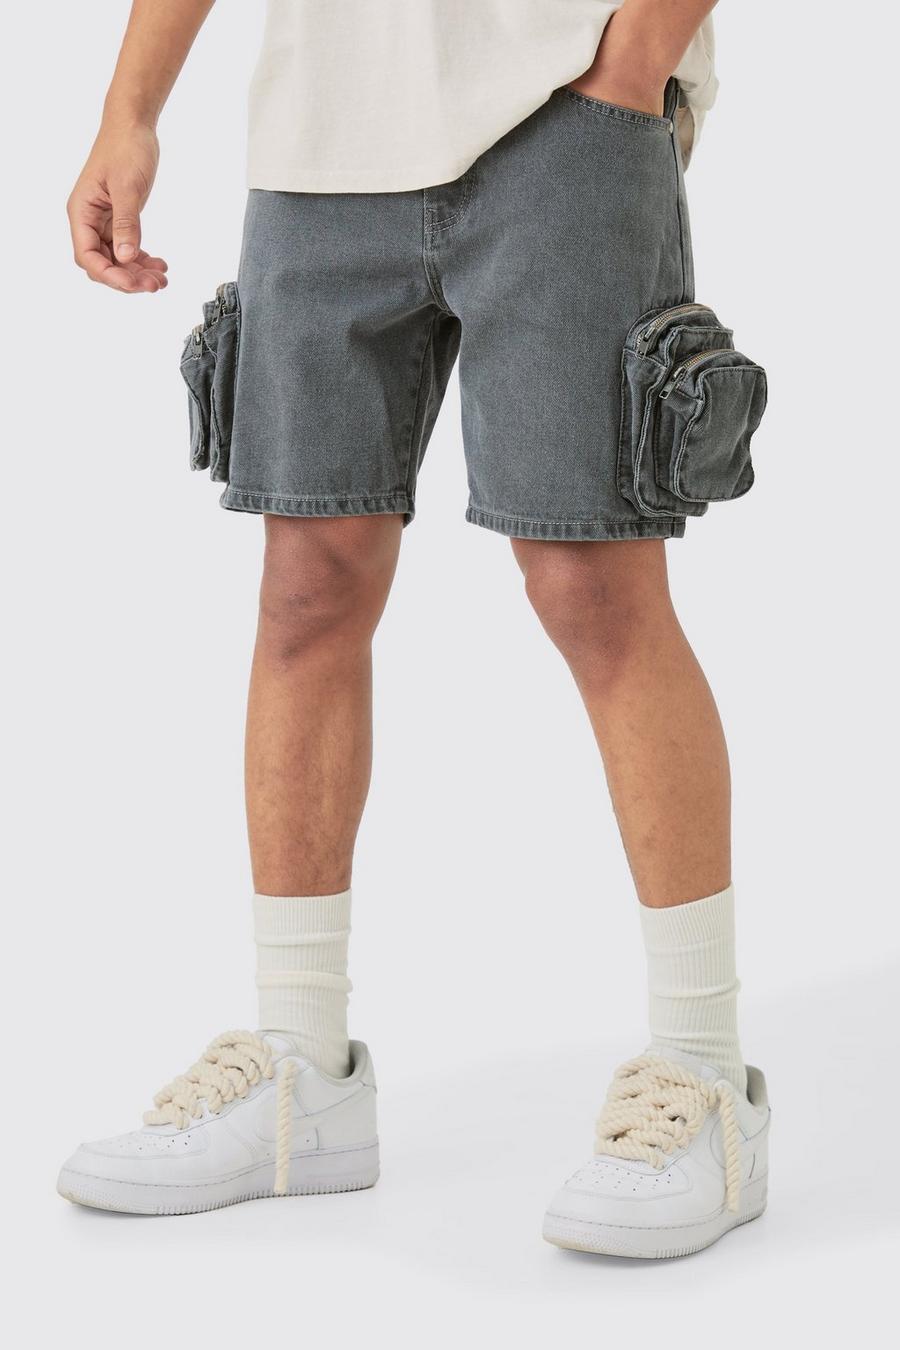 Pantalones cortos vaqueros ajustados con bolsillos cargo 3D en gris claro, Light grey